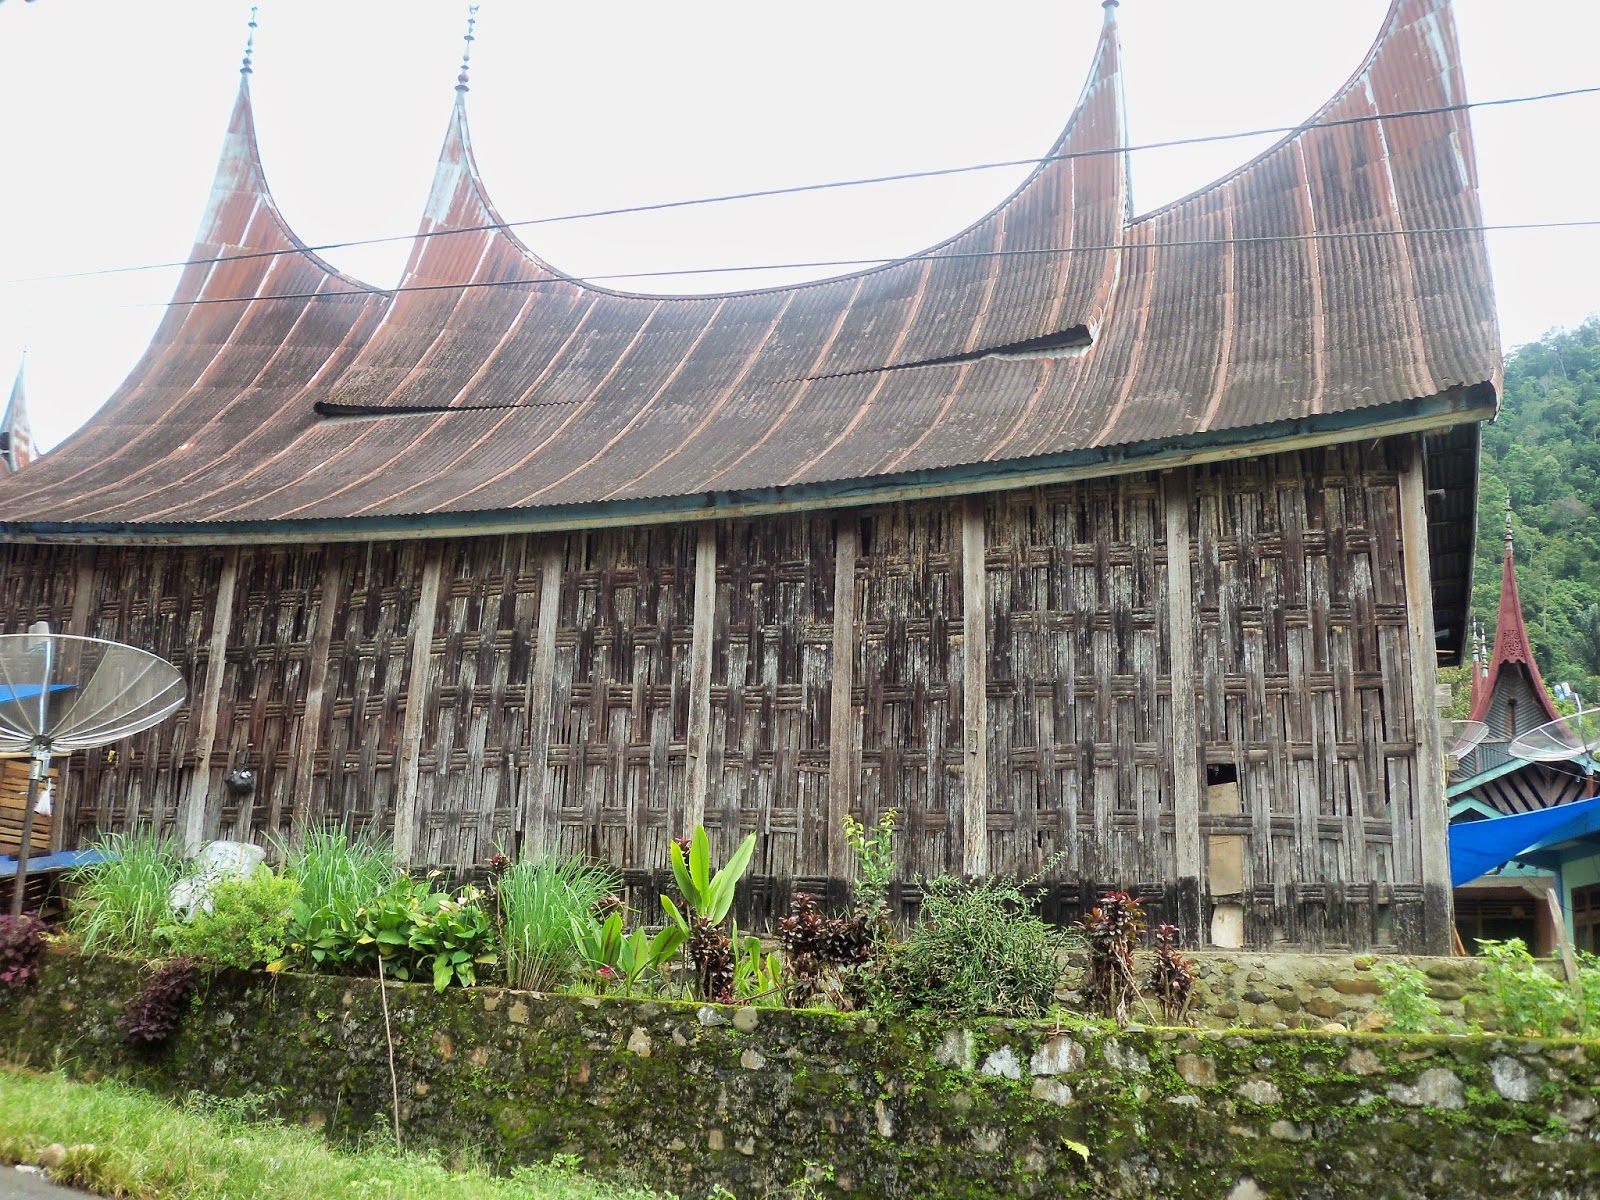  Rumah  Gadang  Wisata Pulau Suwarnadwipa dan Pagang di SumBar